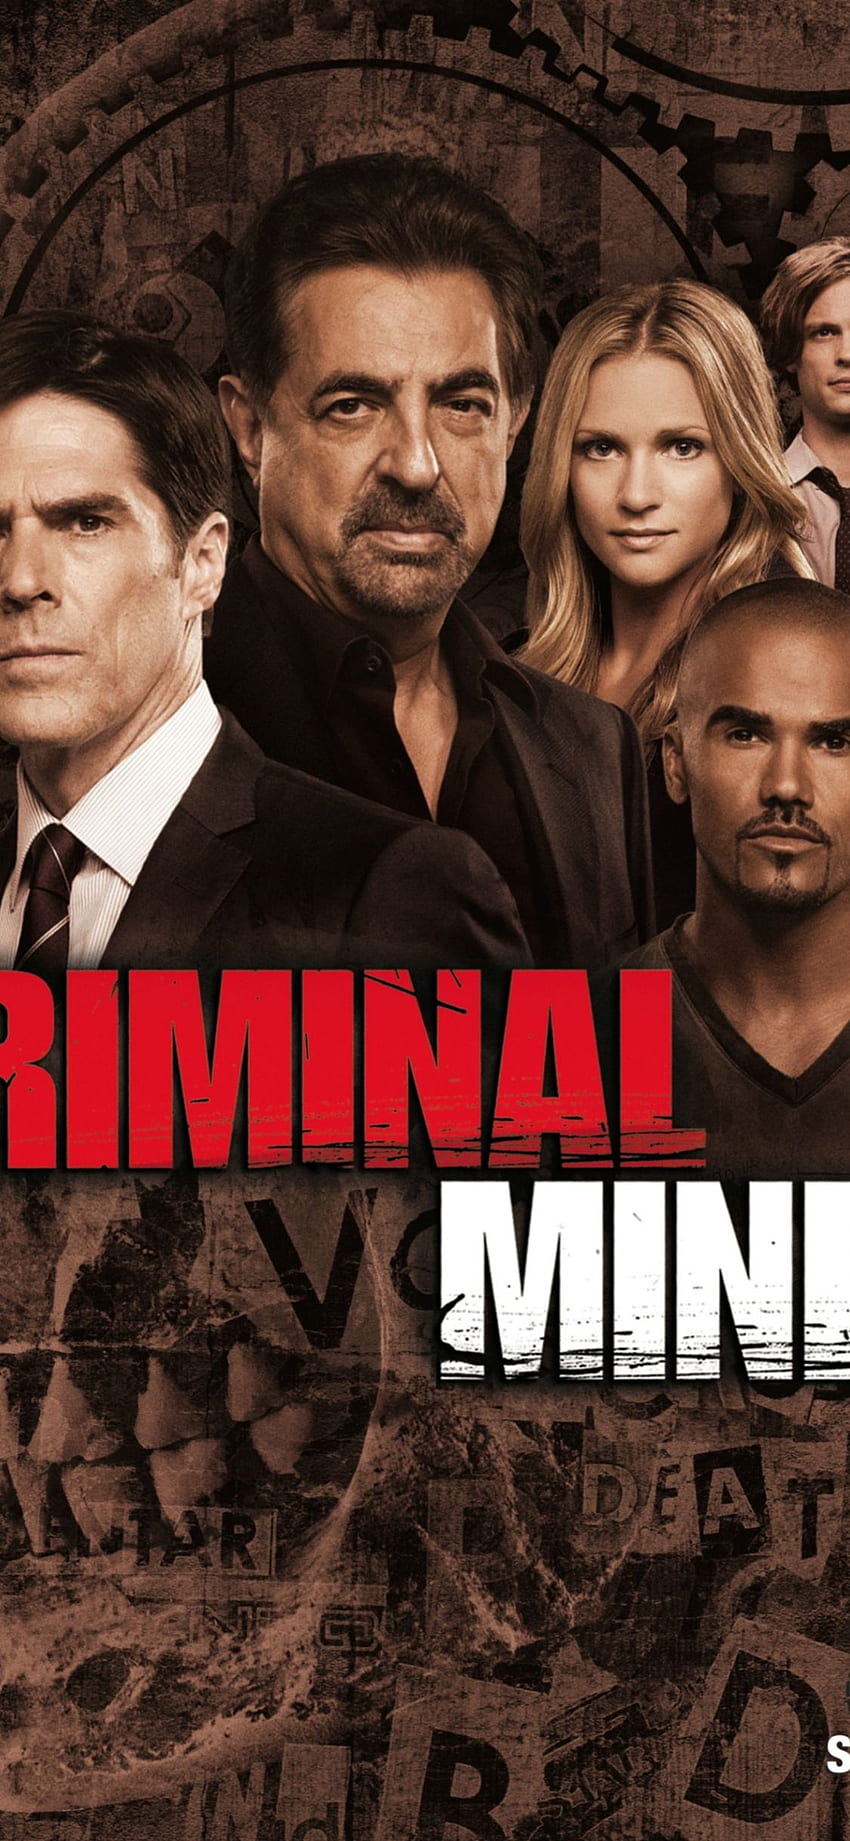 Criminal Minds Temporada 9 PC Android iPhone y iPad [] para tu, móvil y tableta. Explora la temporada 10 de Criminal Minds. Temporada de mentes criminales fondo de pantalla del teléfono